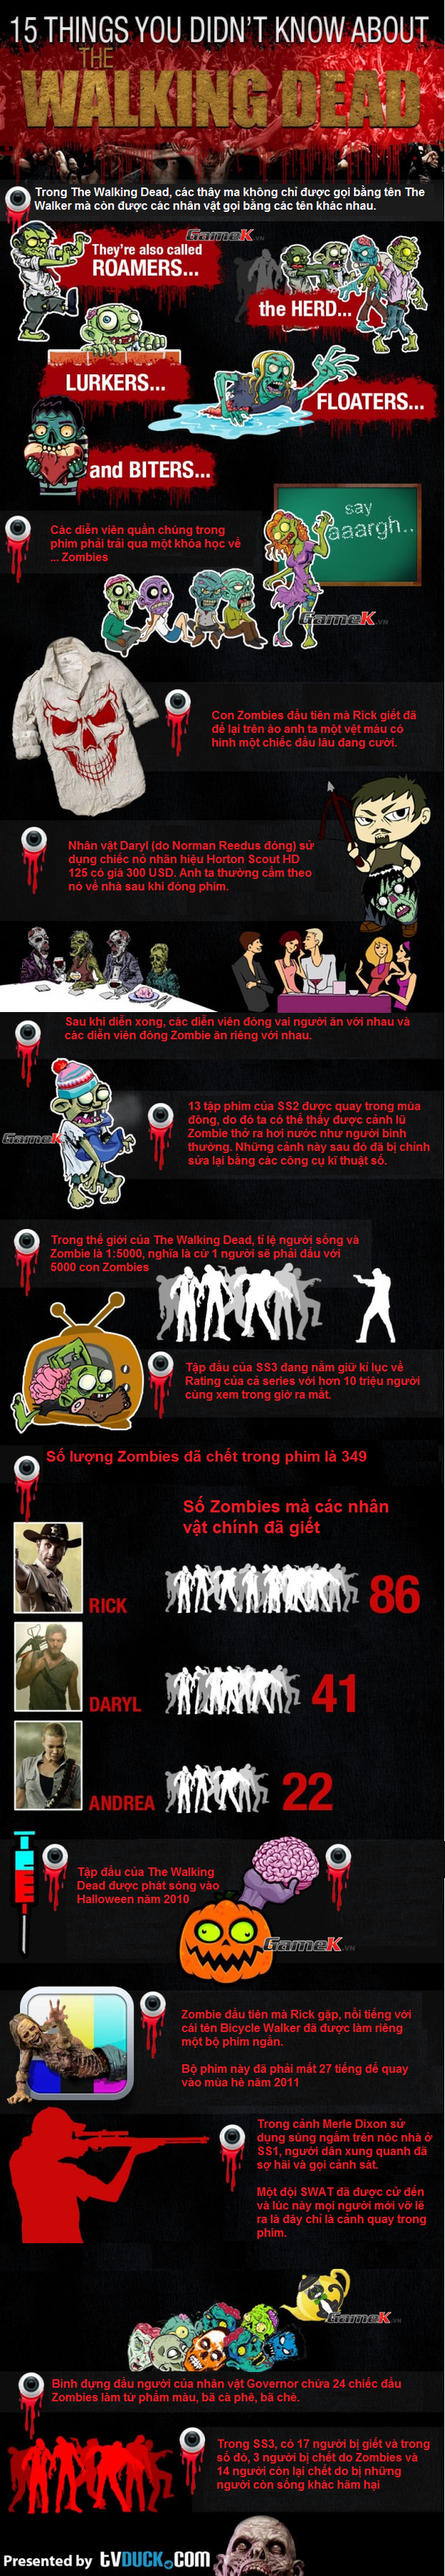 15 fun fact về The Walking Dead mà bạn chưa biết 1